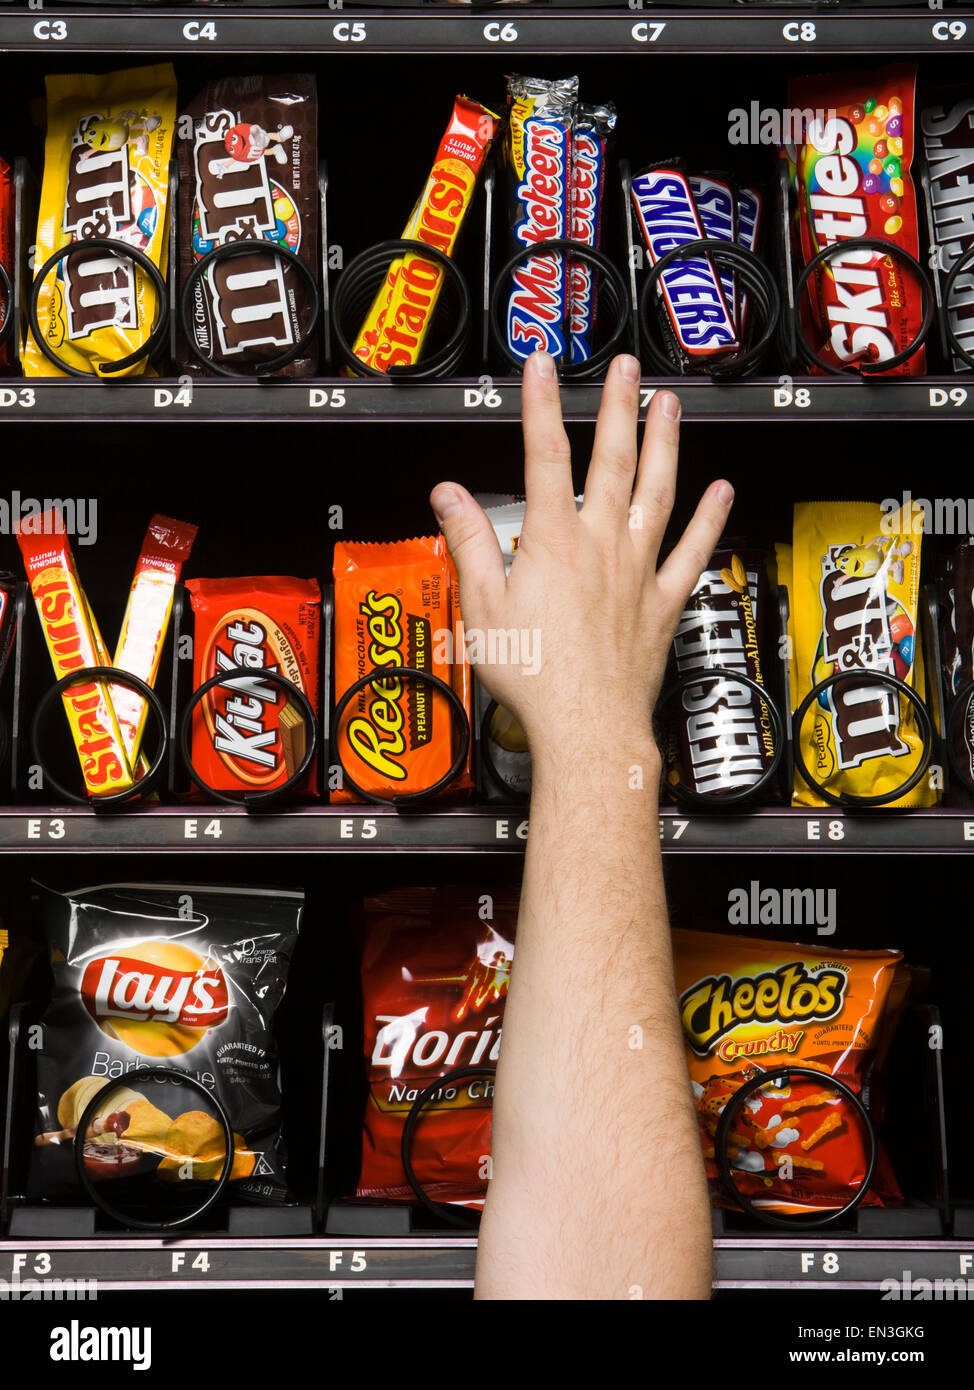 Hand Reaching for candy dans un distributeur automatique Banque D'Images